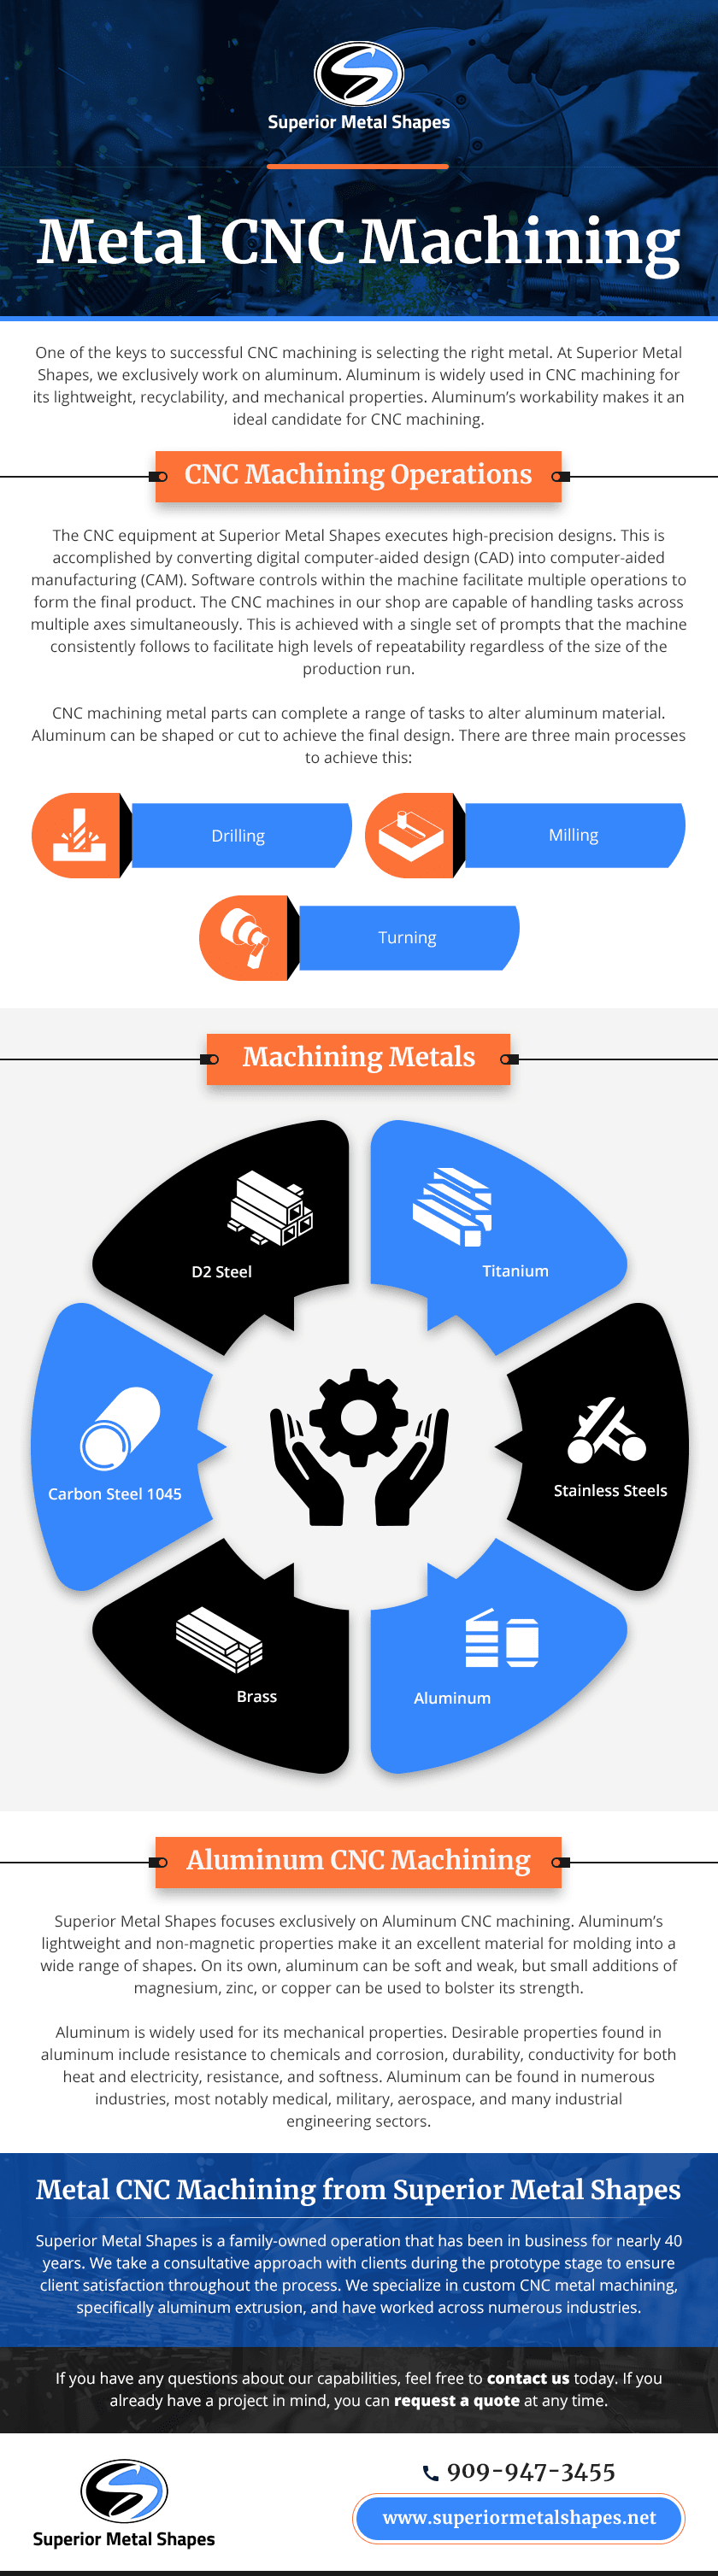 Metal-CNC-Machining